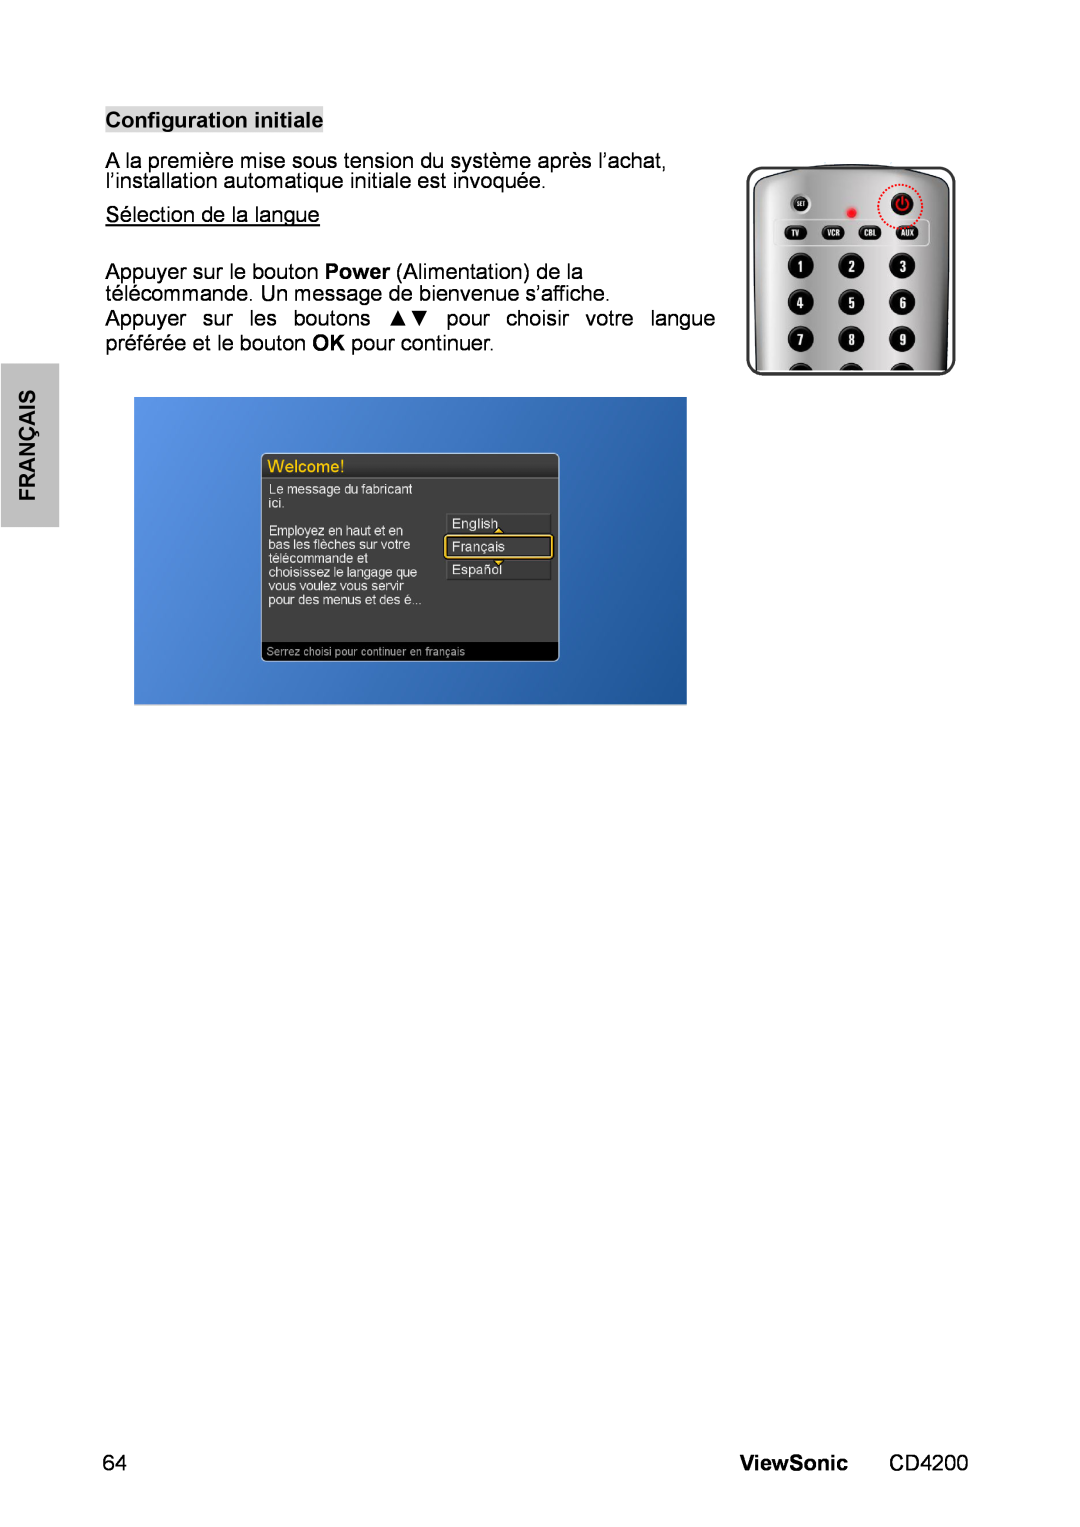 ViewSonic CD4200 manual Configuration initiale, Sélection de la langue, Appuyer sur les boutons pour choisir votre langue 